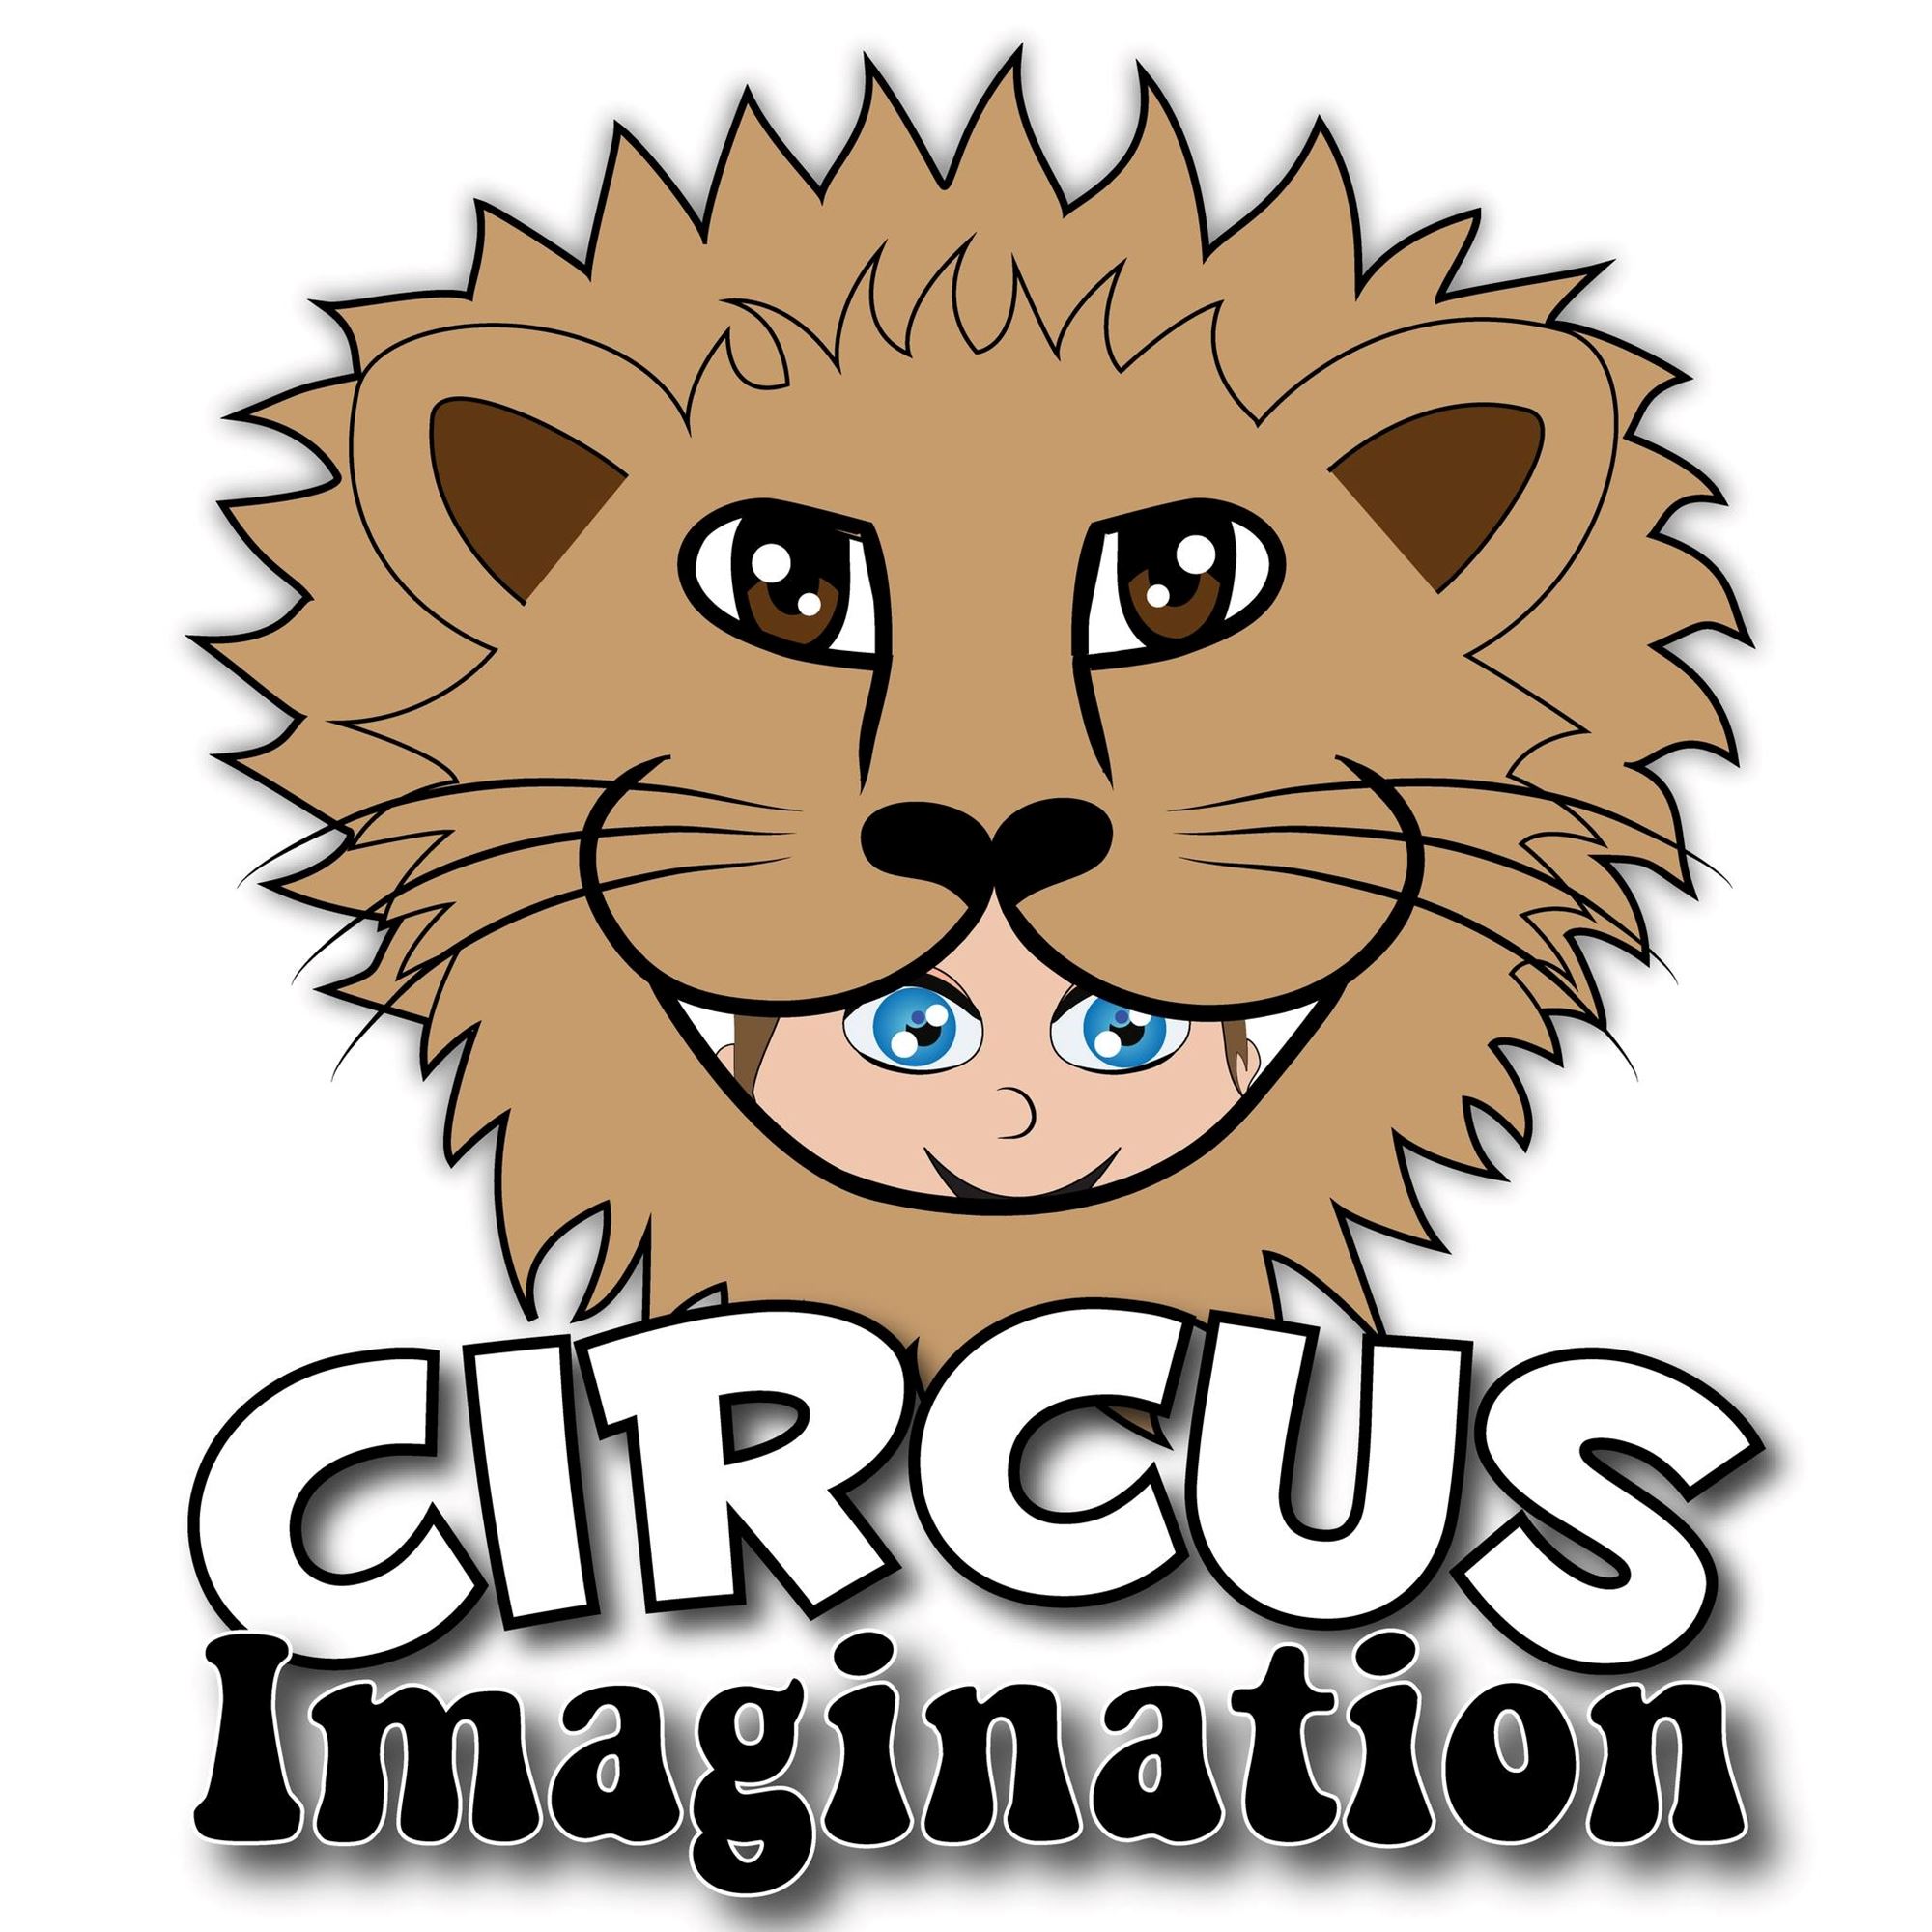 Circus Imagination